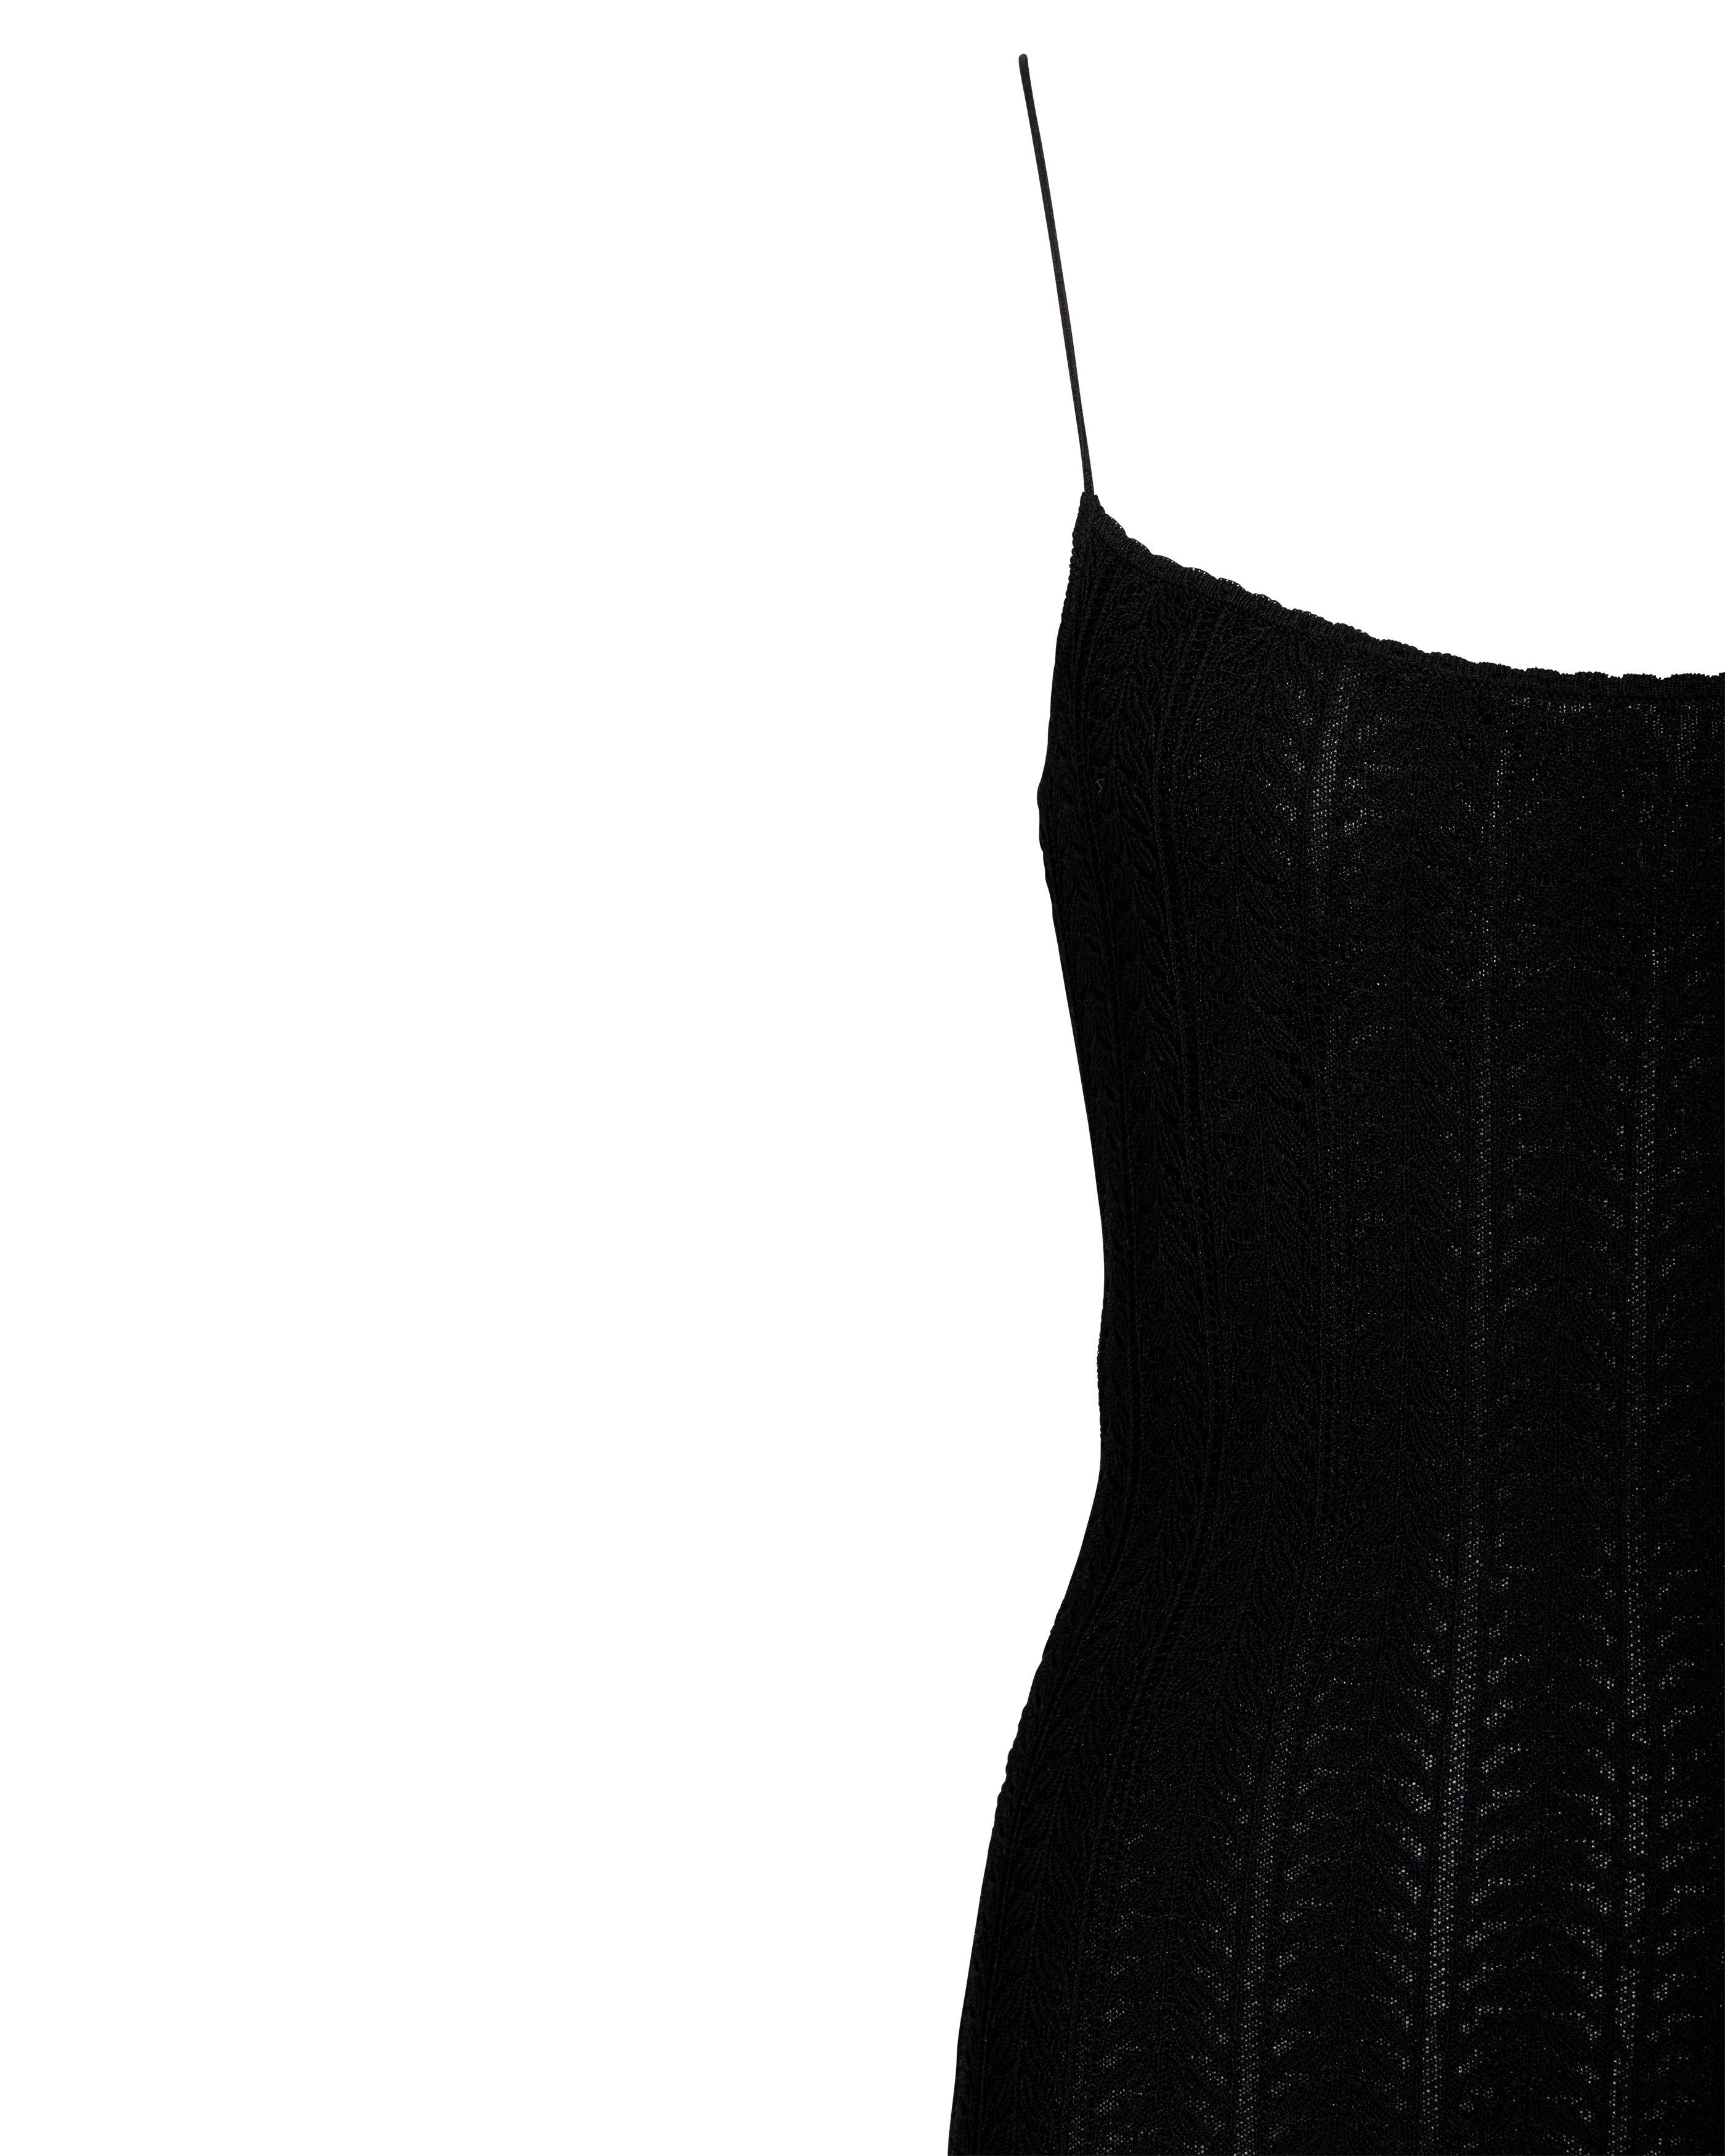 Resort 2000 John Galliano Black Openwork Knit Knee-Length Slip Dress For Sale 1